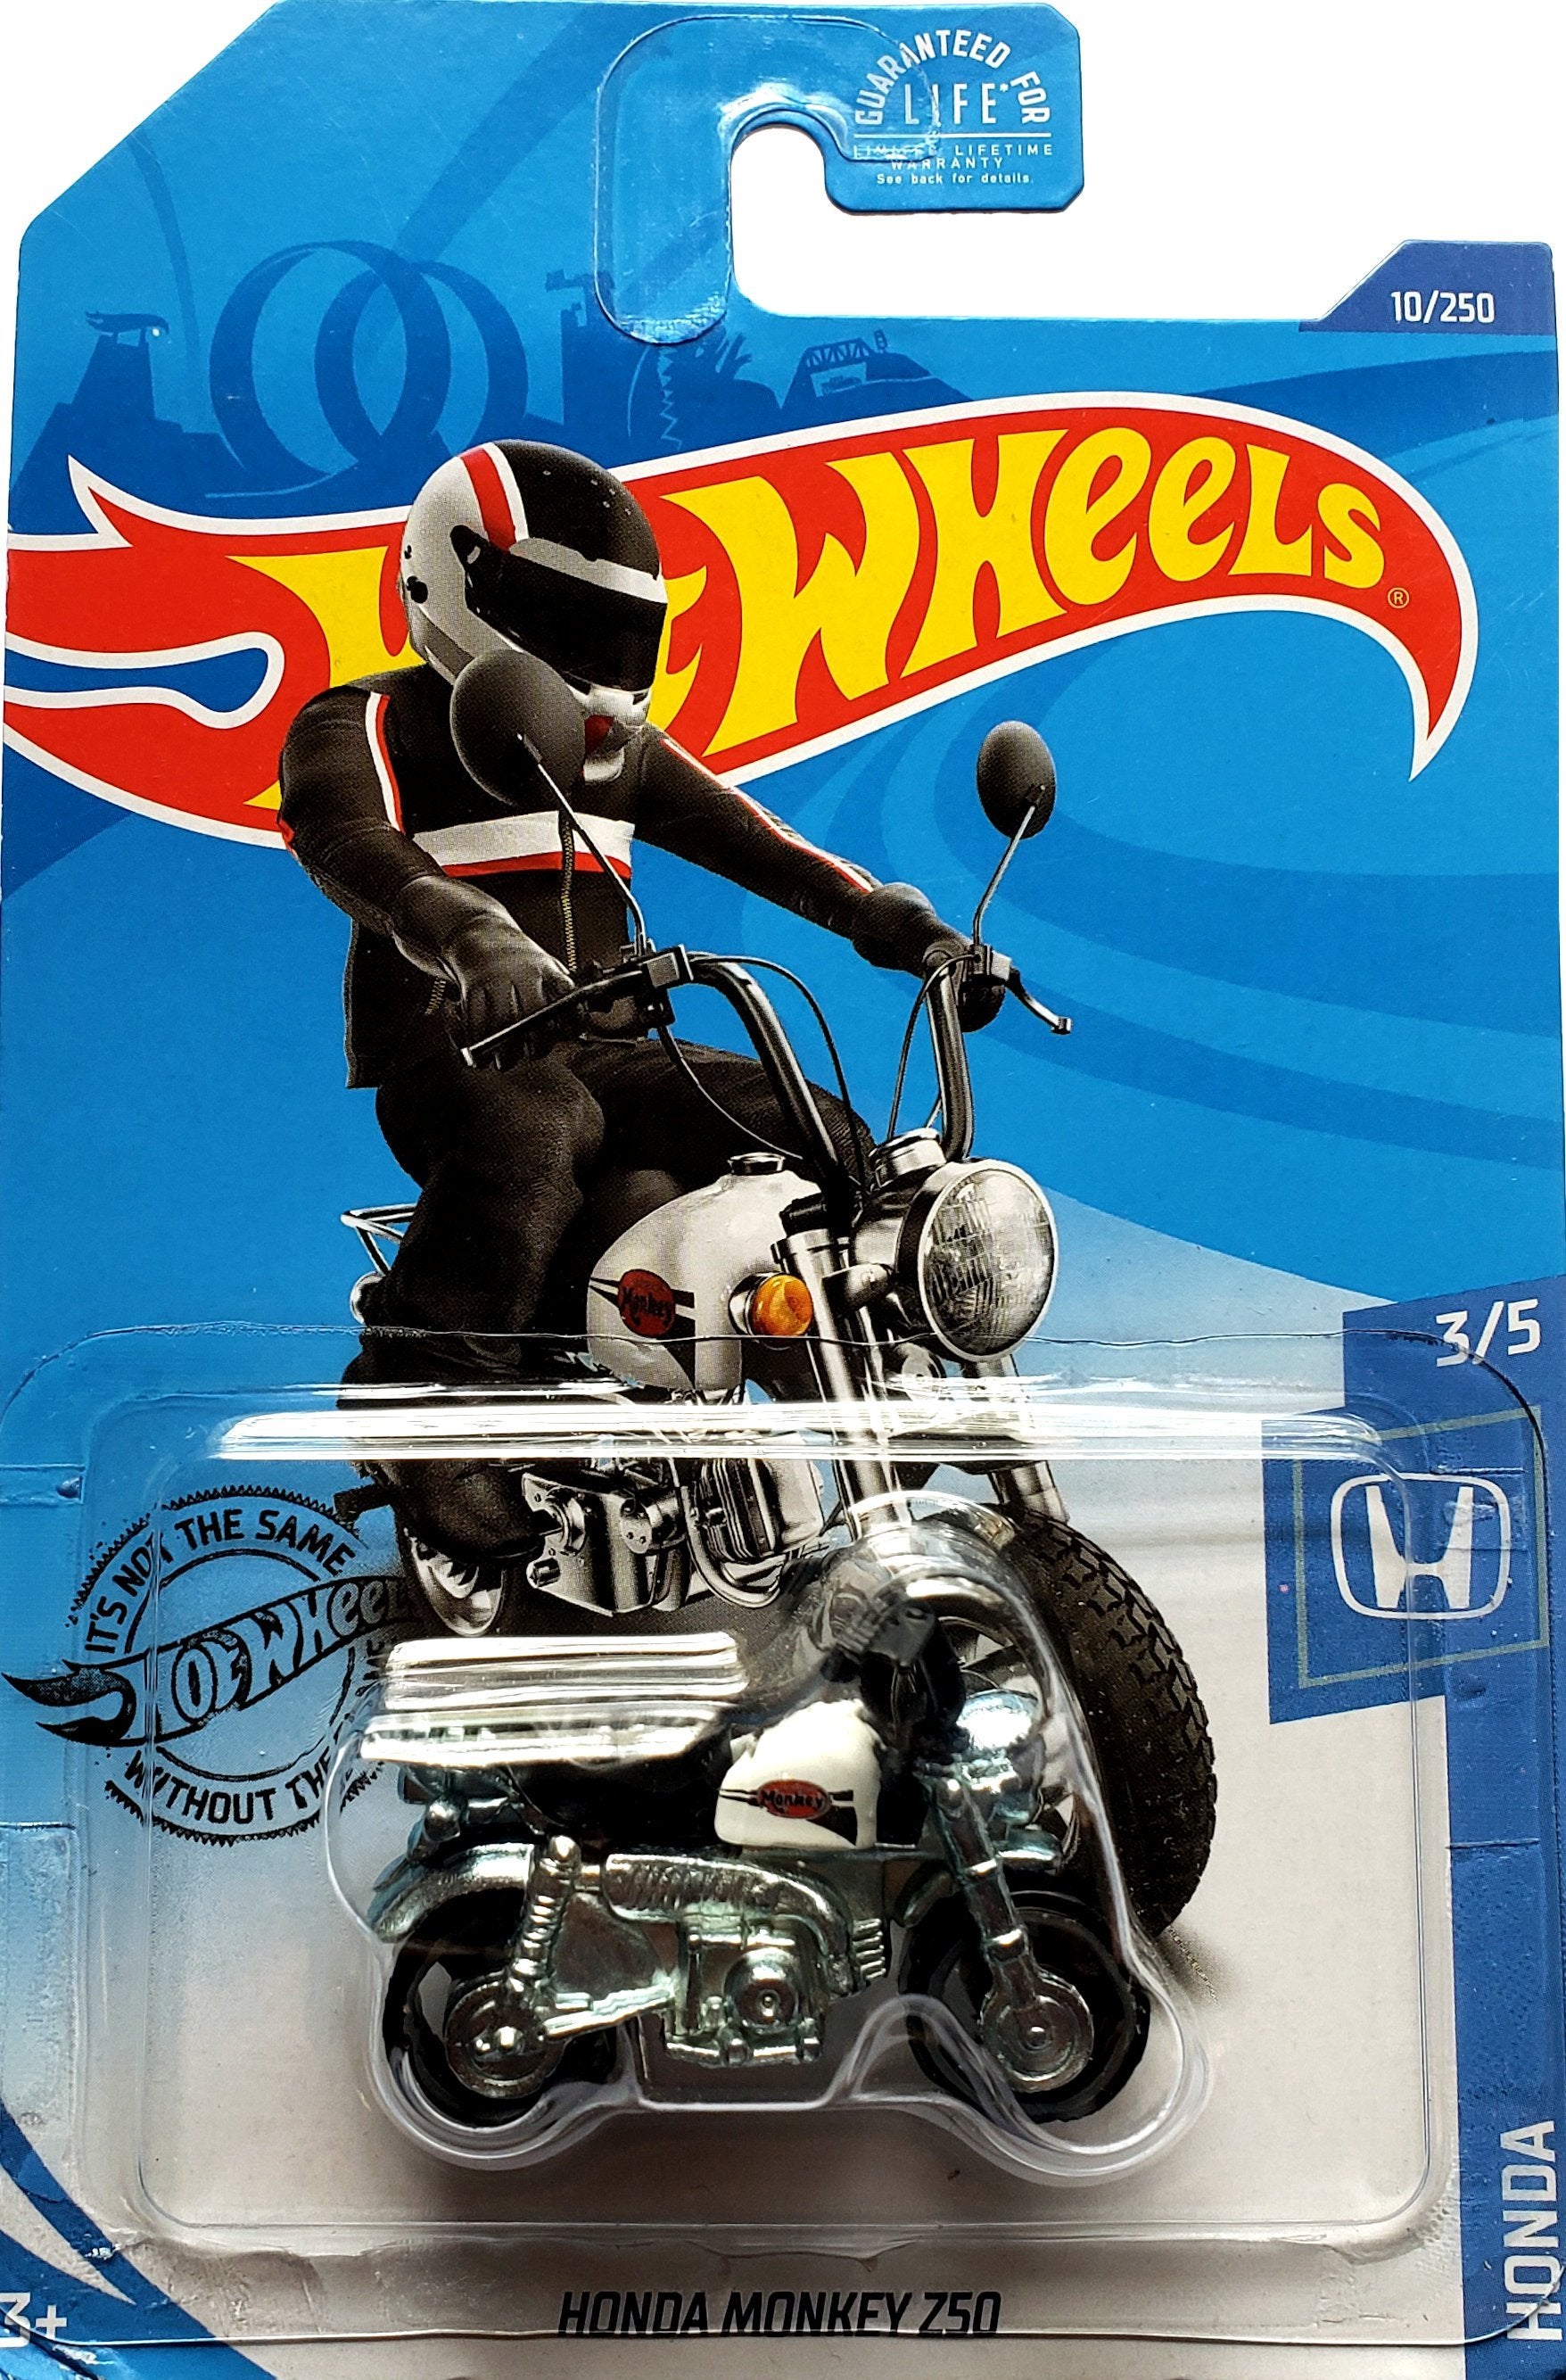 2020 Hot Wheels Mainline #010 - Honda Monkey Z50 Motorcycle (White) GHF51